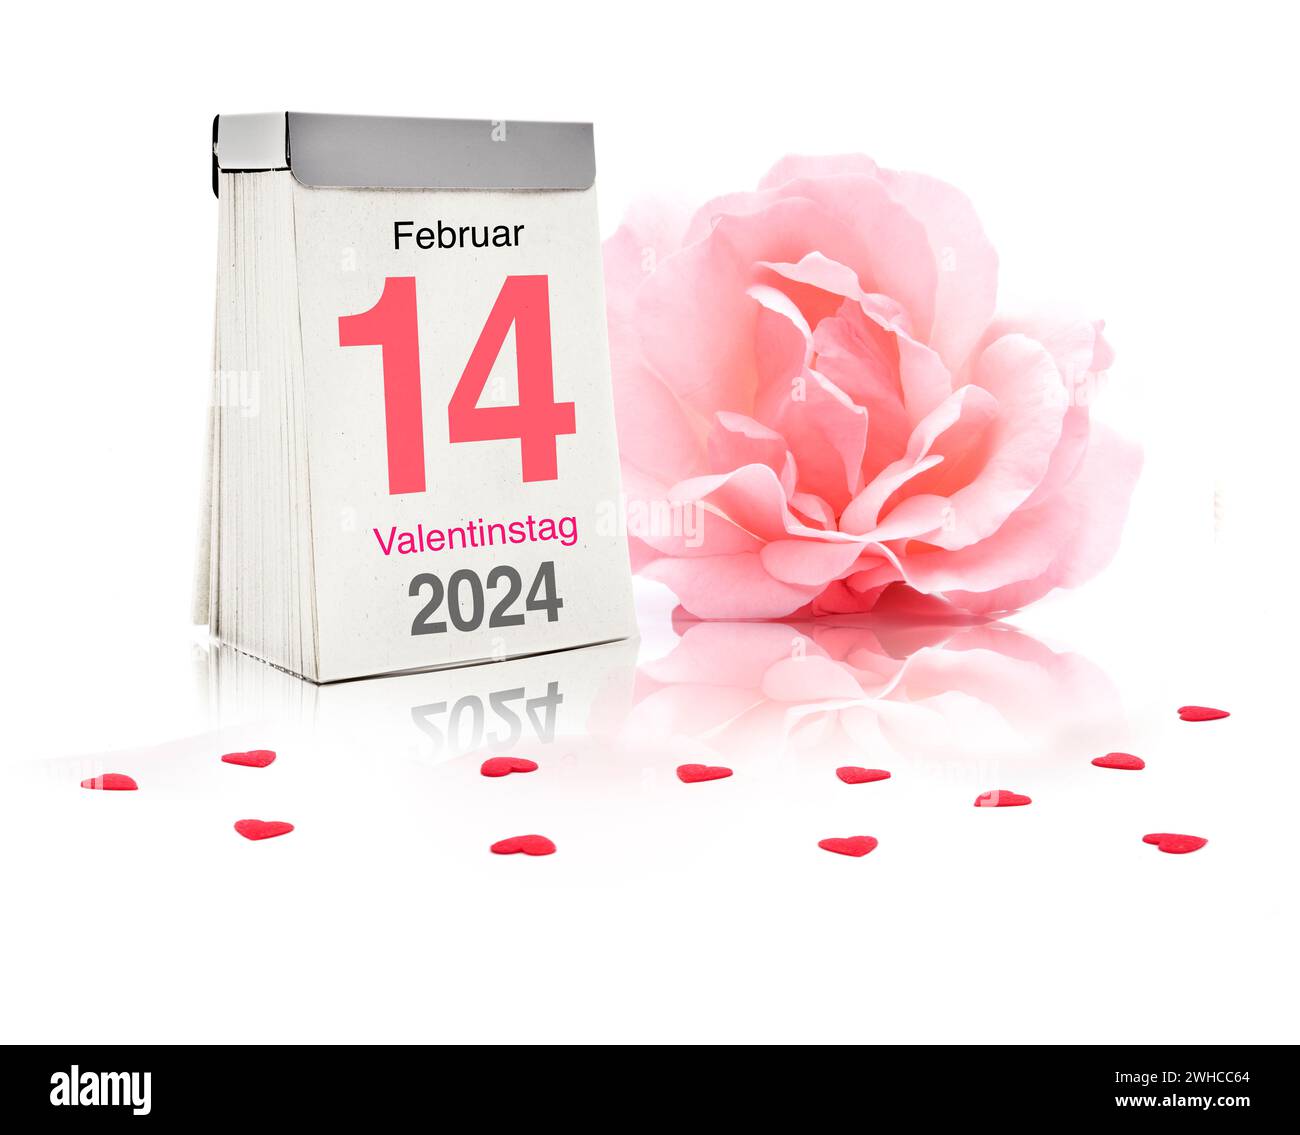 Saint-Valentin le 14 février 2024, calendrier Banque D'Images